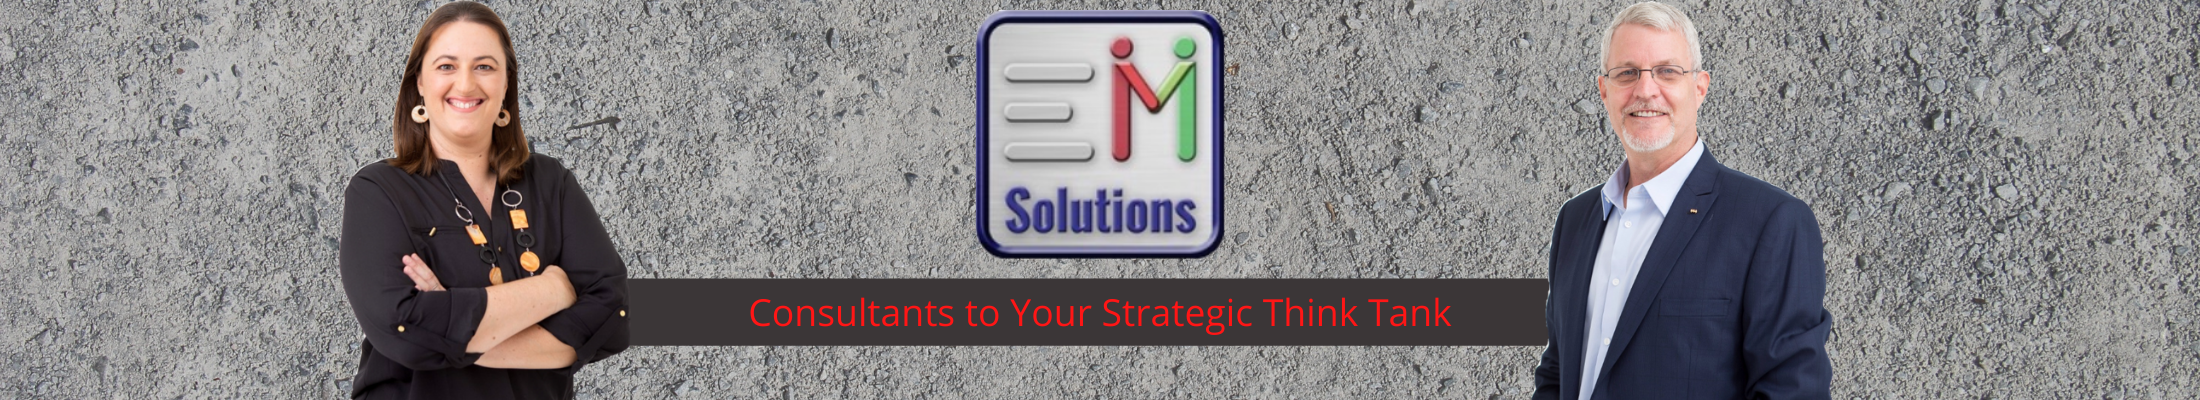 EM Solutions Logo